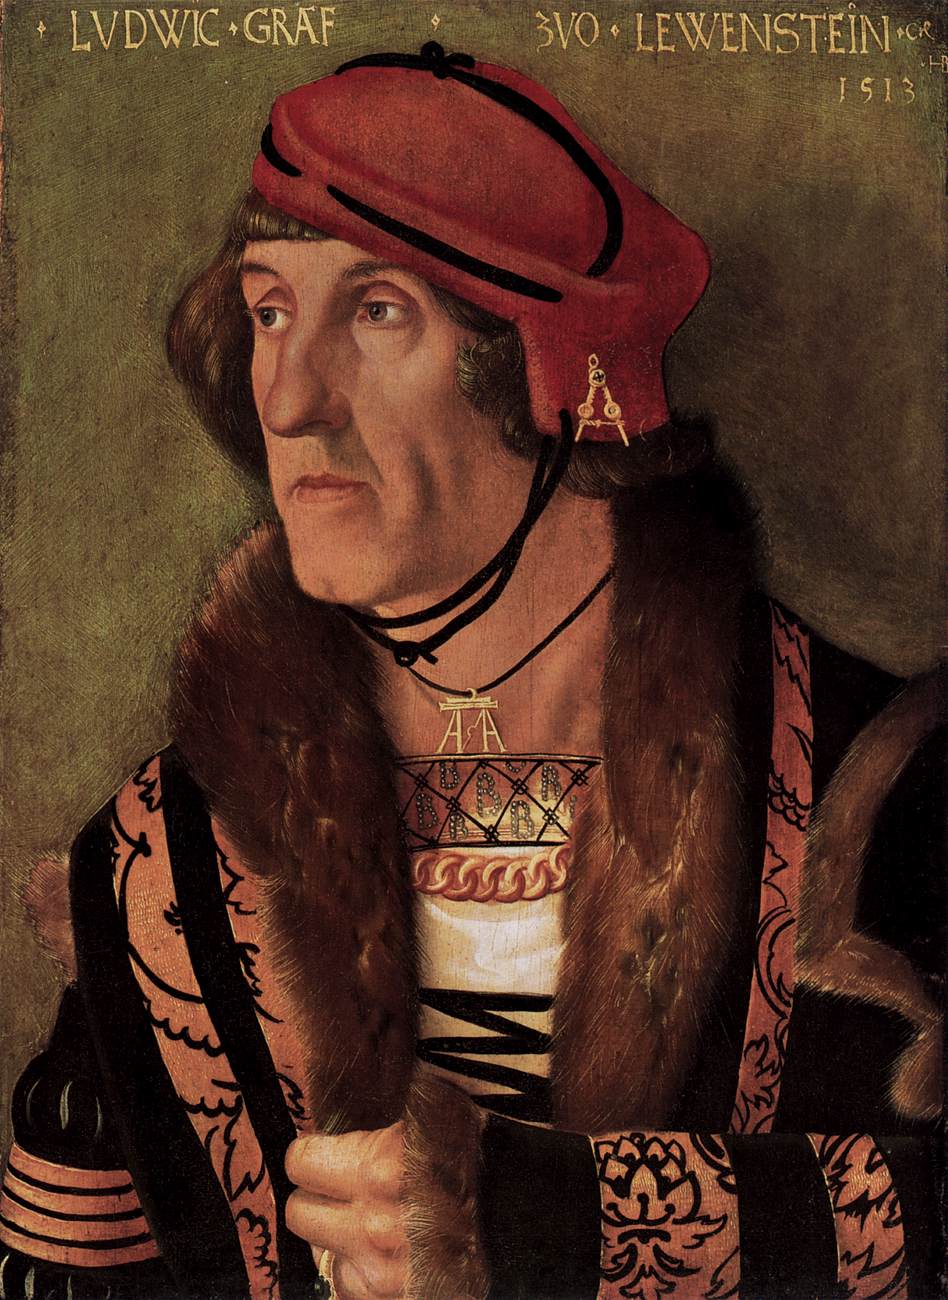 Ludwig, comte von löwenstein